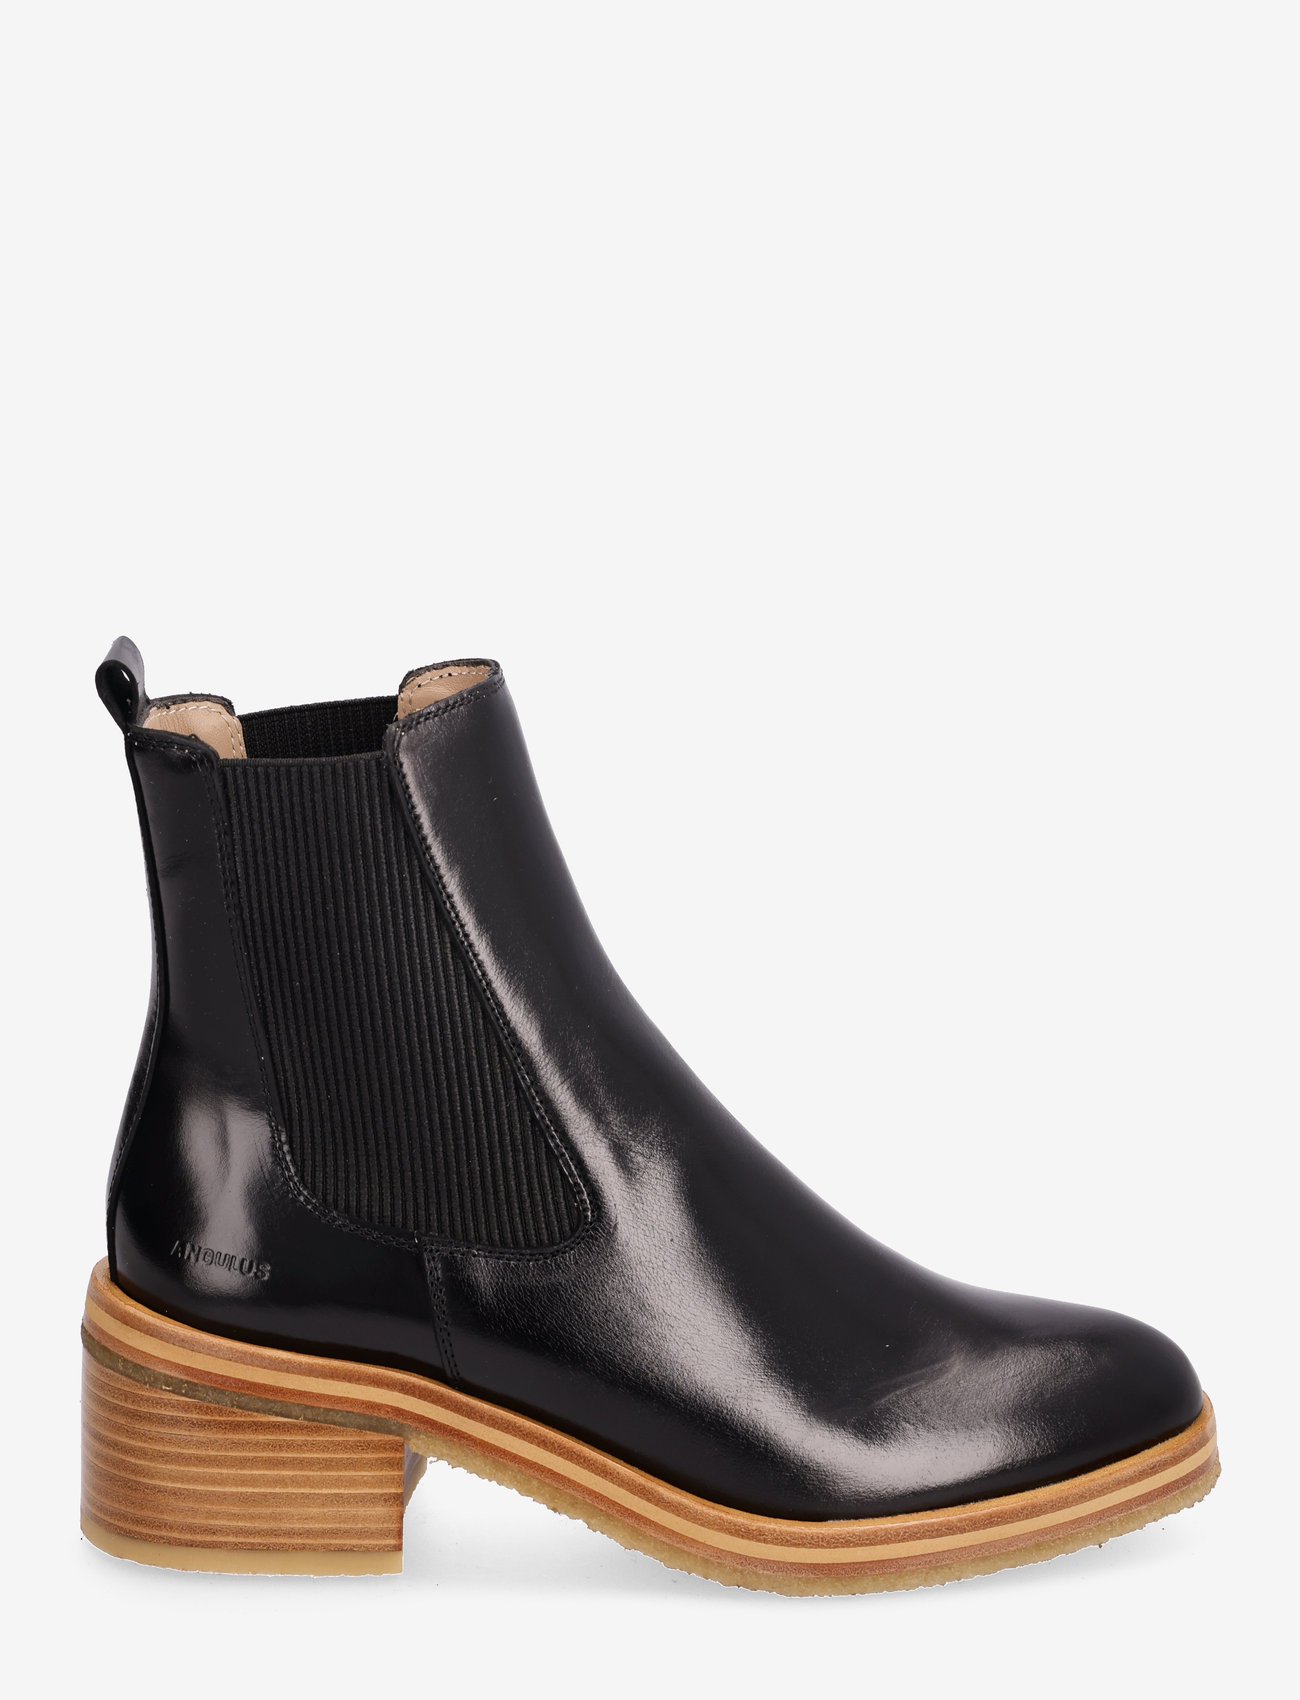 ANGULUS - Bootie - block heel - with zippe - high heel - 1835/019 black /black - 1